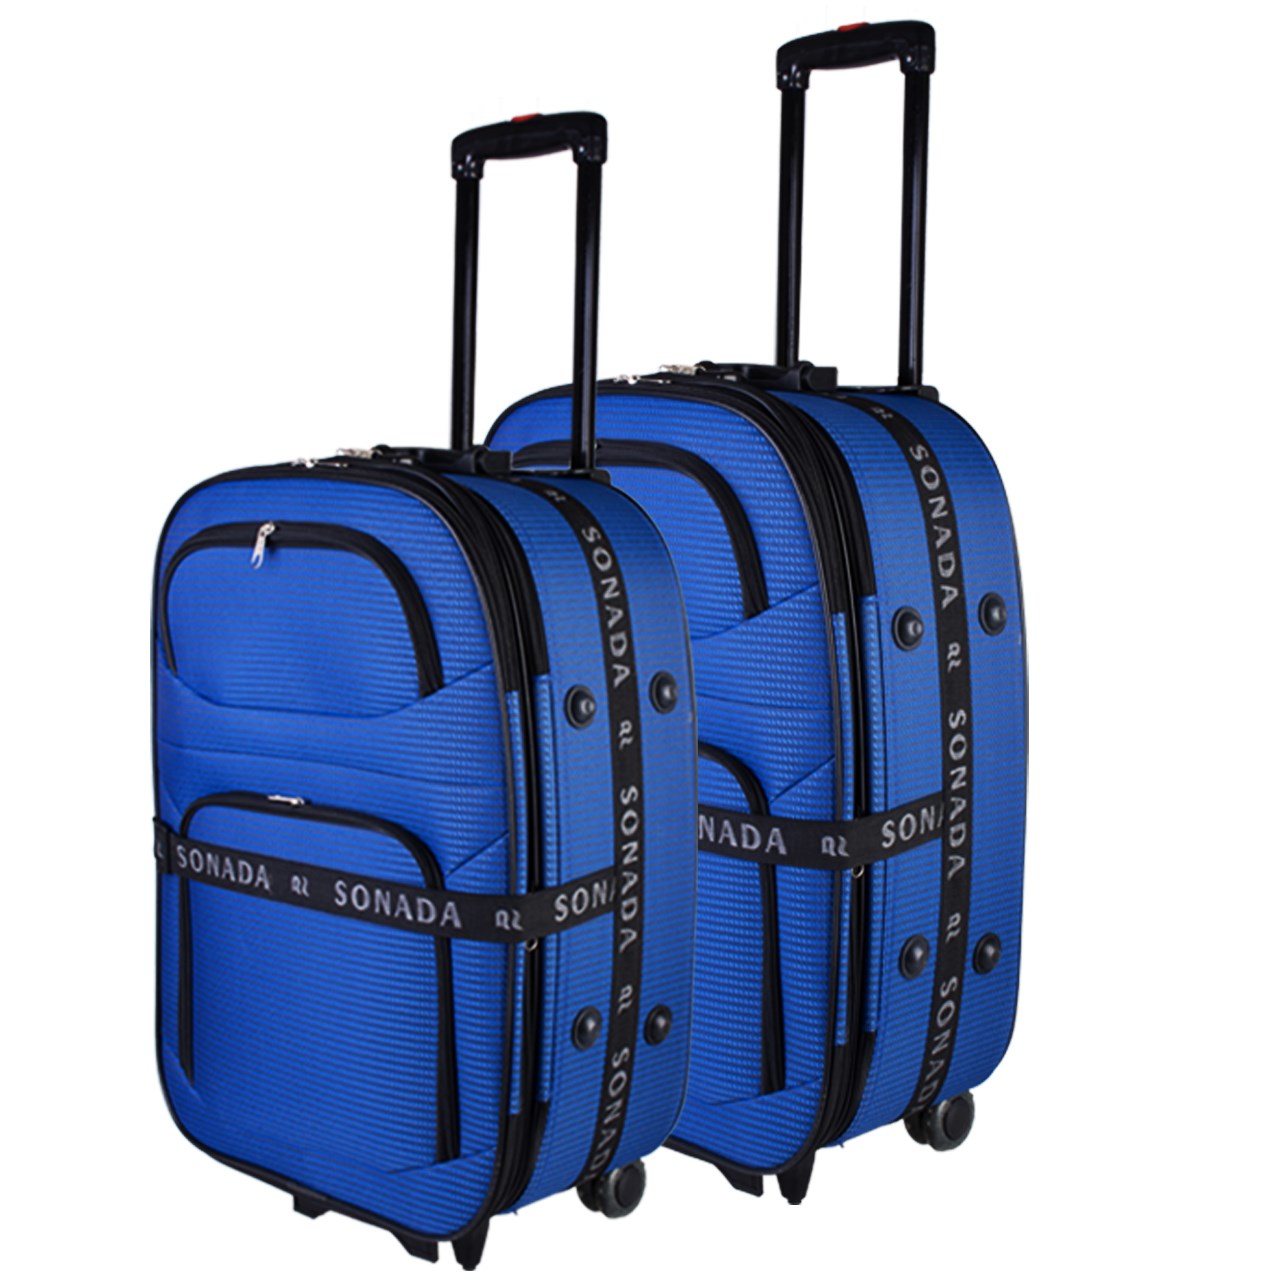 مجموعه دو عددی چمدان مدل Sonada